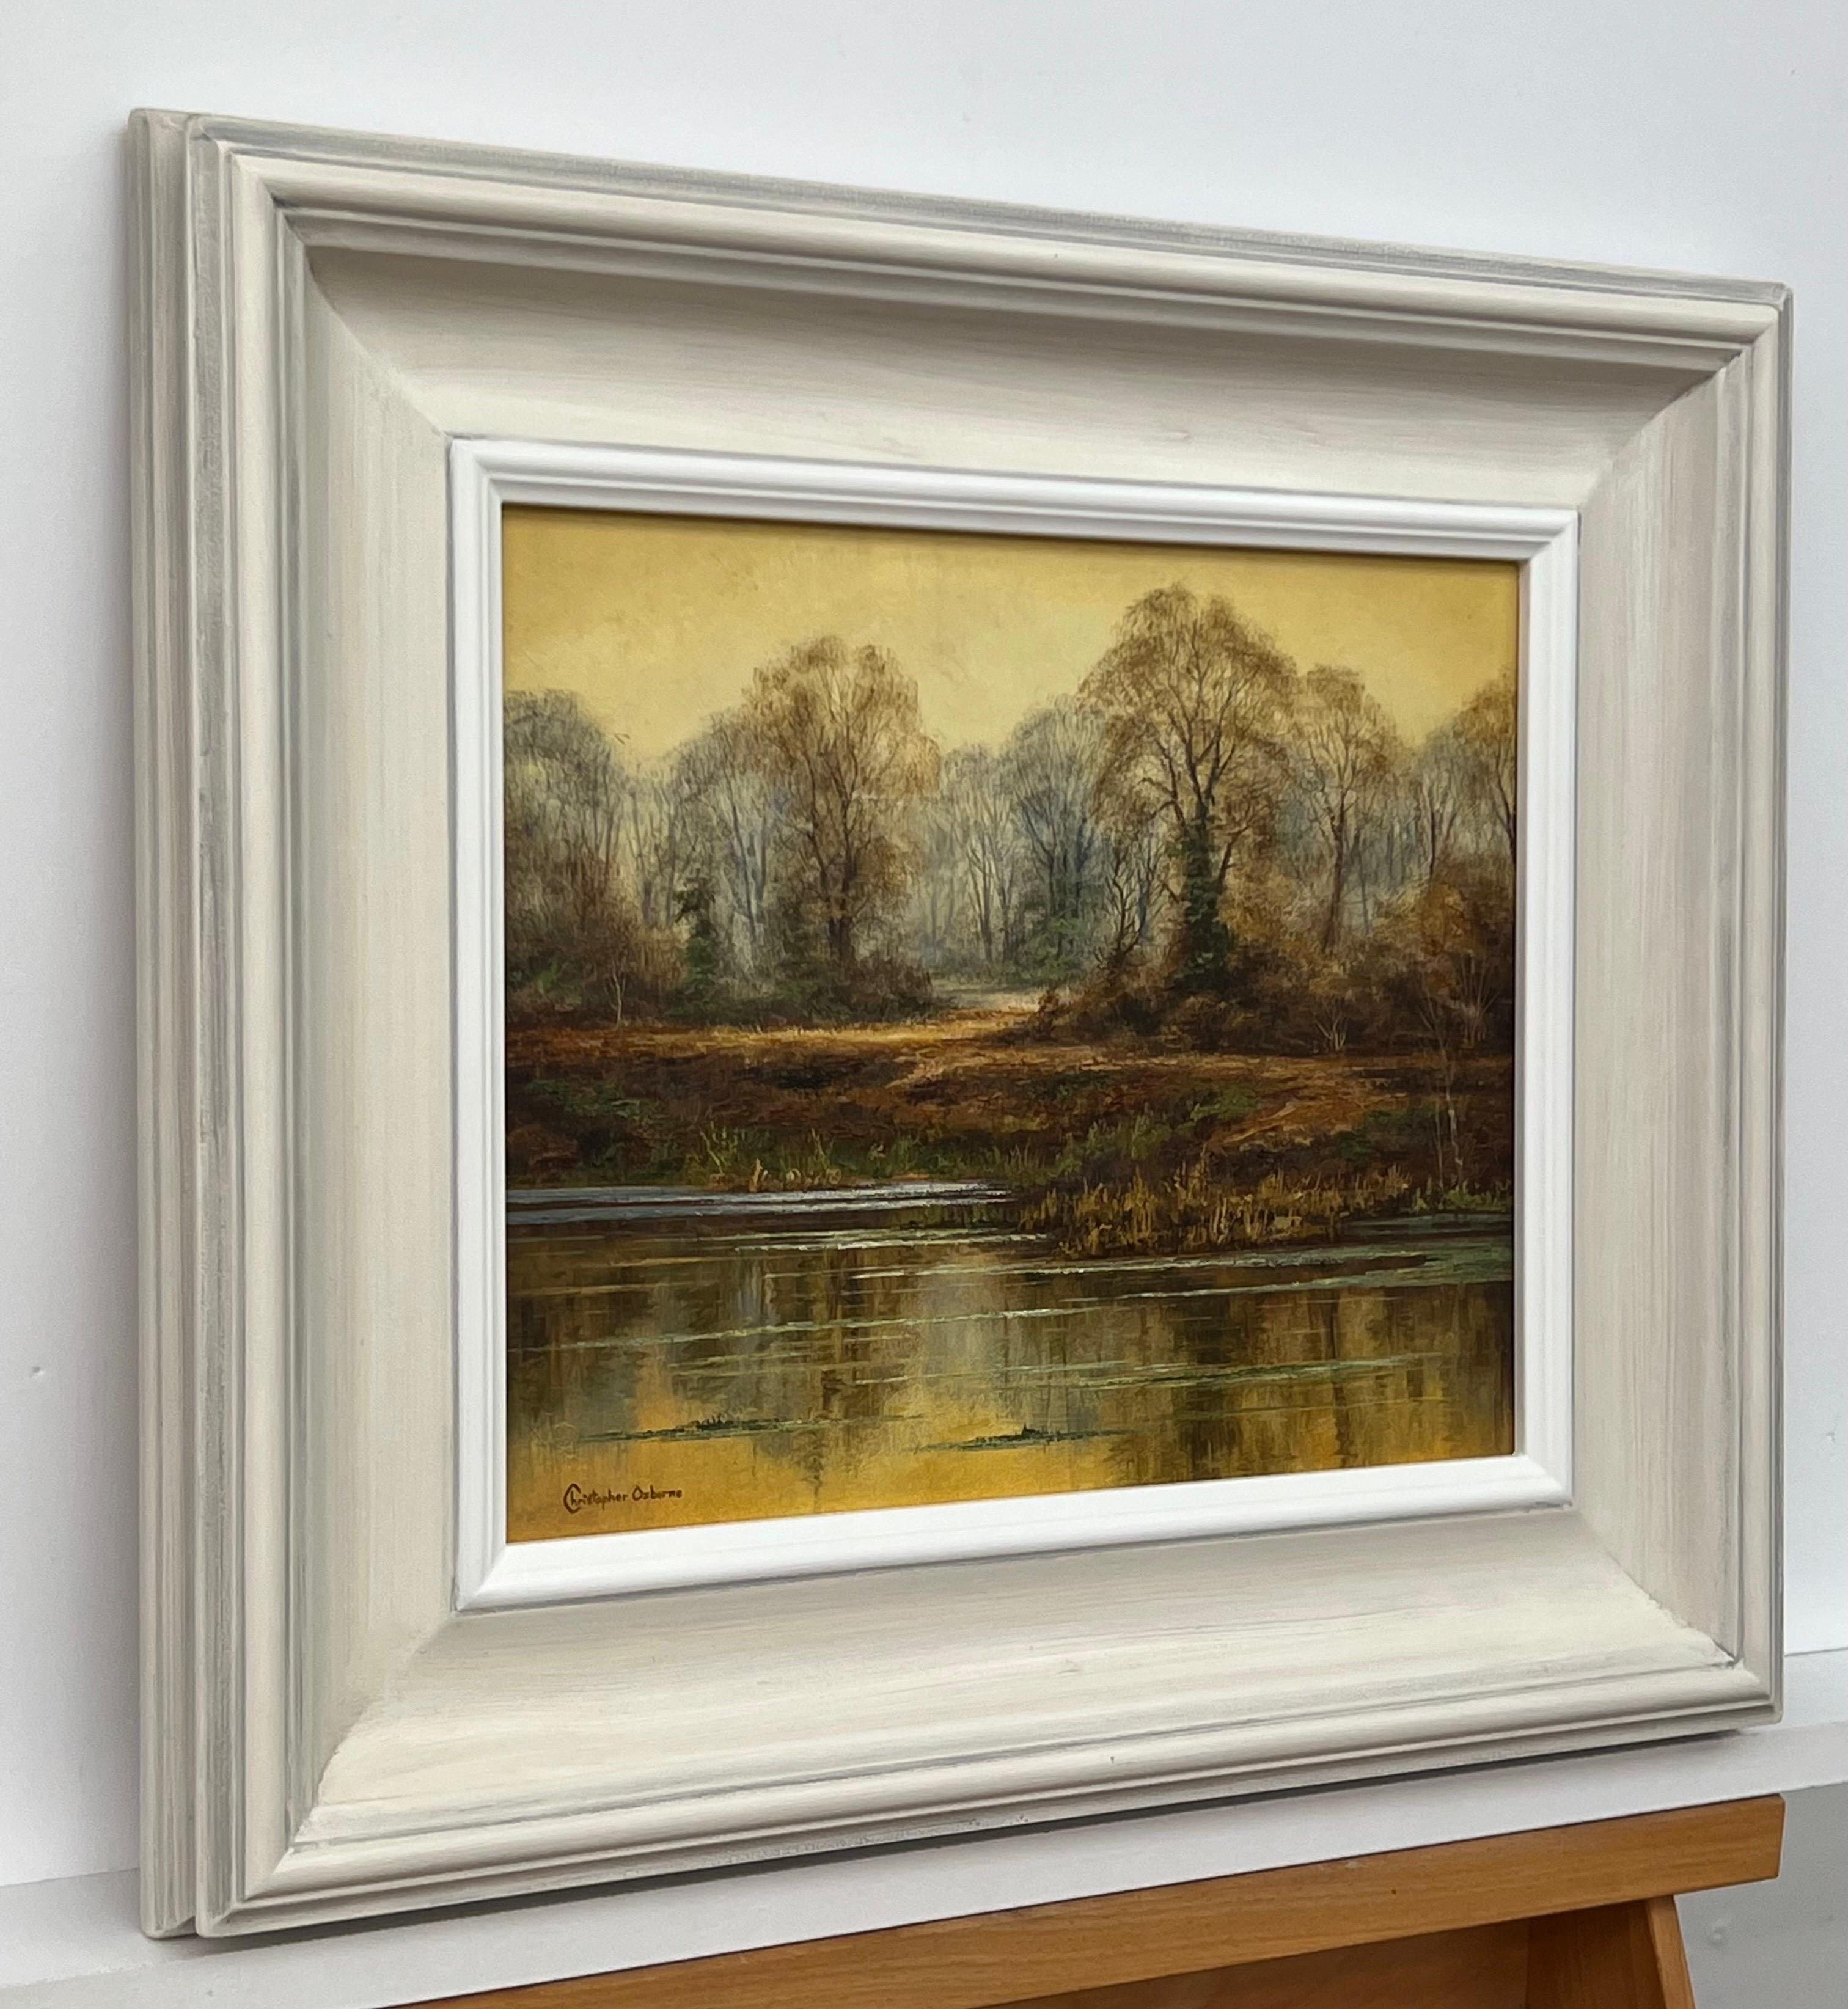 The Reflections on Forest Pond in the English Countryside with Warm Yellows & Browns (Réflexions sur un étang de forêt dans la campagne anglaise avec des jaunes et des bruns chauds) - Photoréalisme Painting par Christopher Osborne